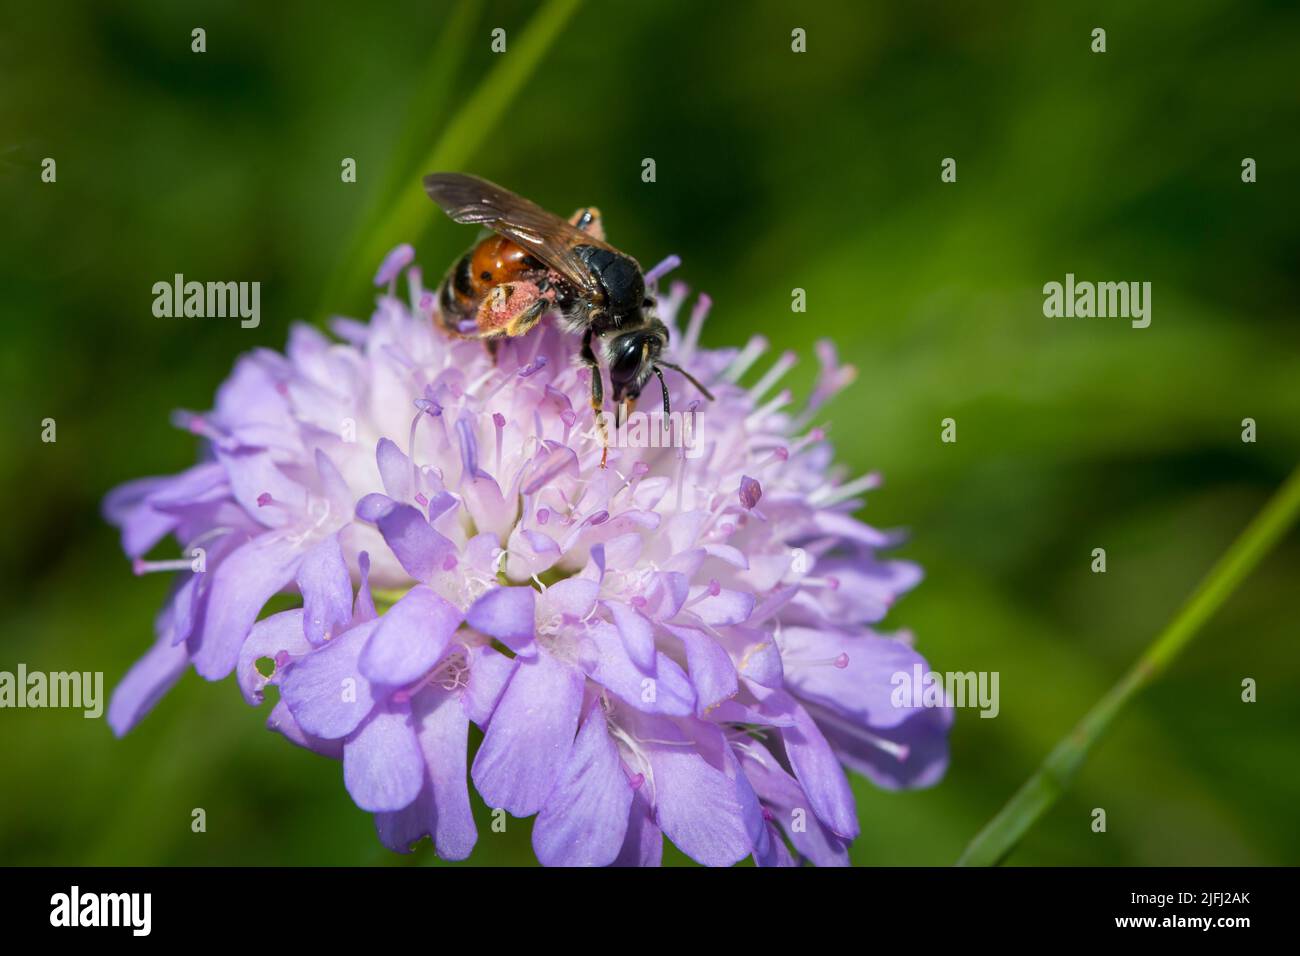 Insecte se nourrissant sur une fleur violette Banque D'Images